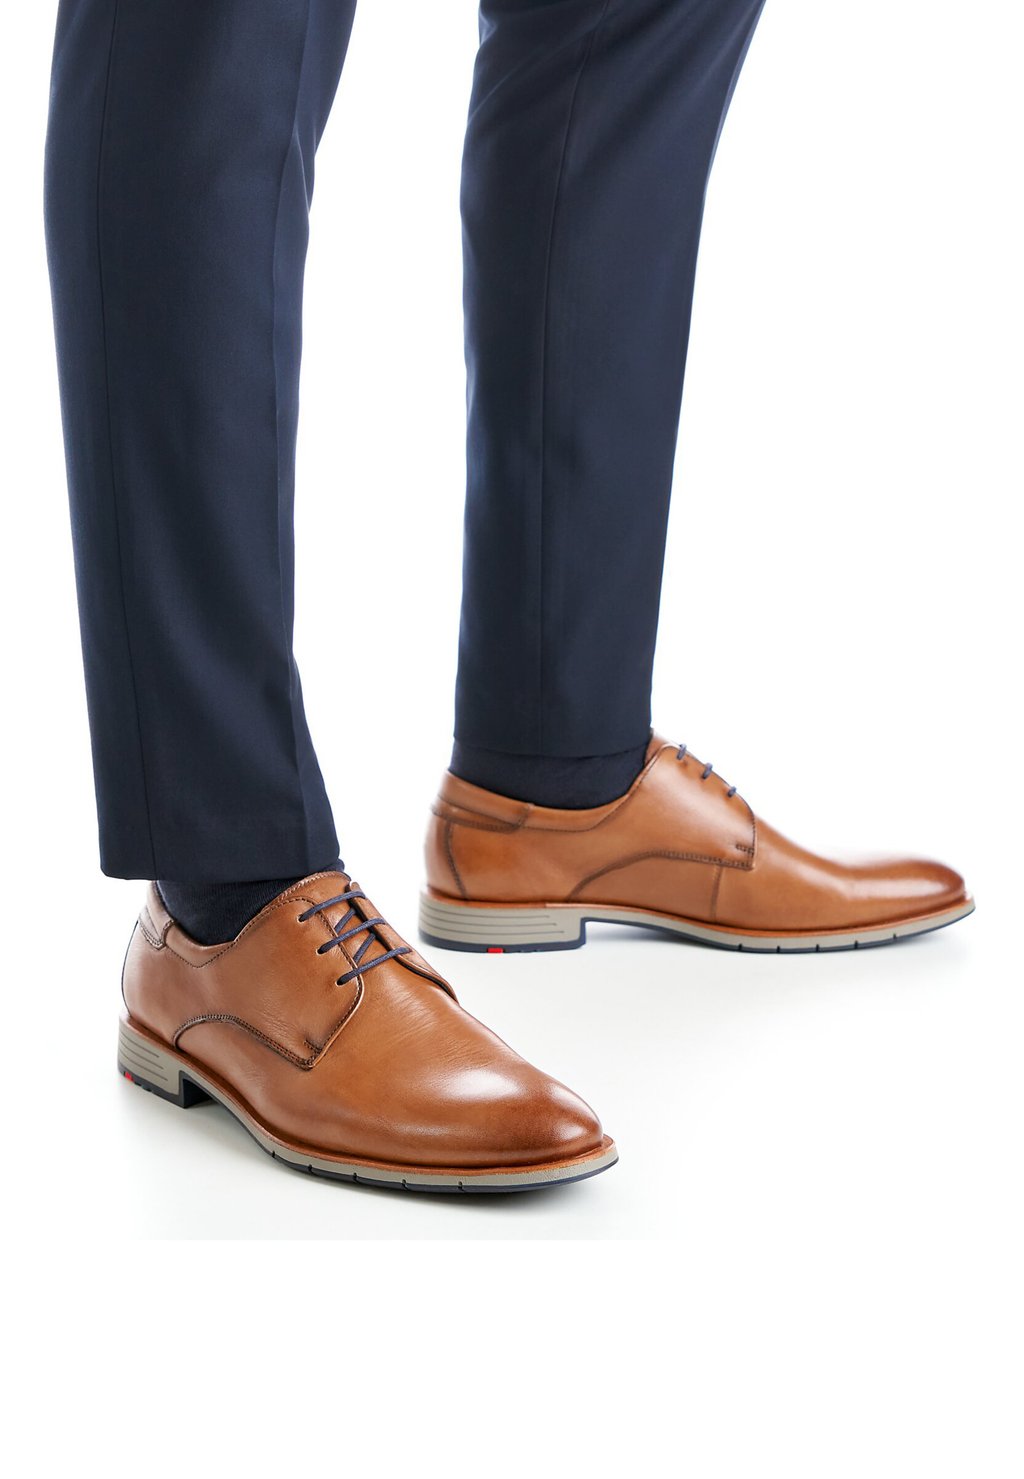 Элегантные туфли на шнуровке Tambo Lloyd, цвет braun